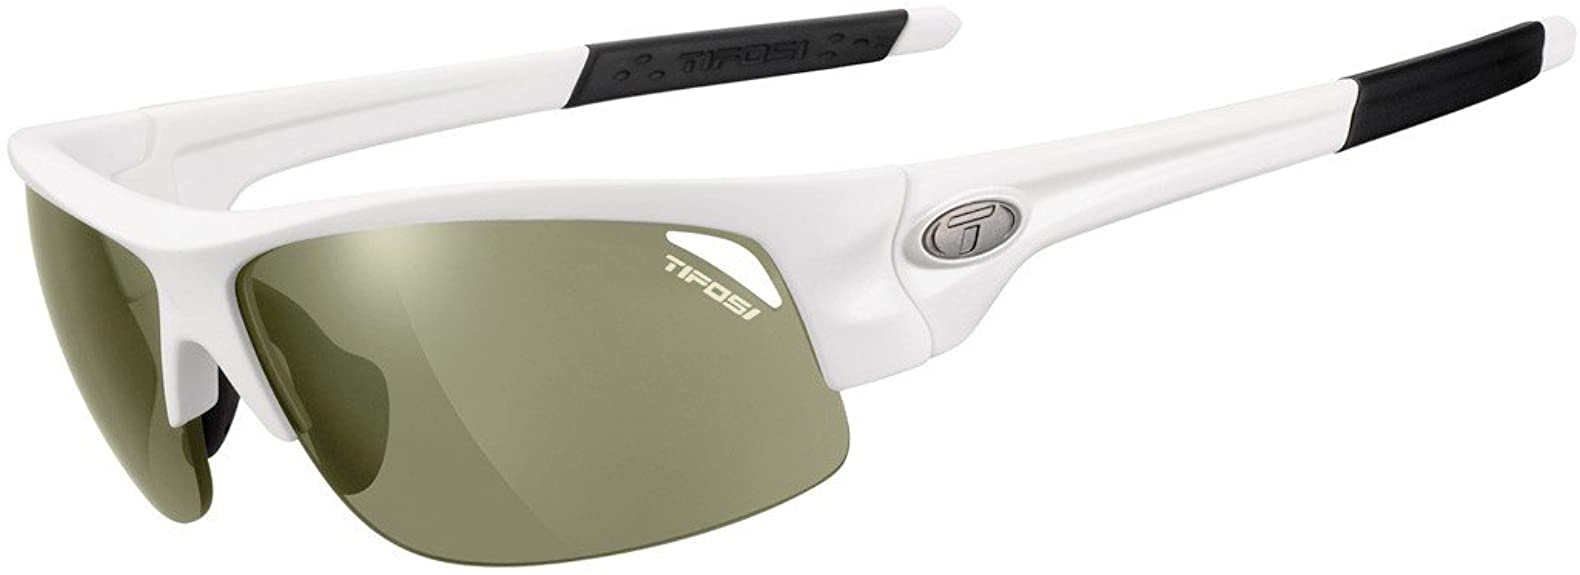 Mens Tifosi Saxon Dual Lens Golf Sunglasses